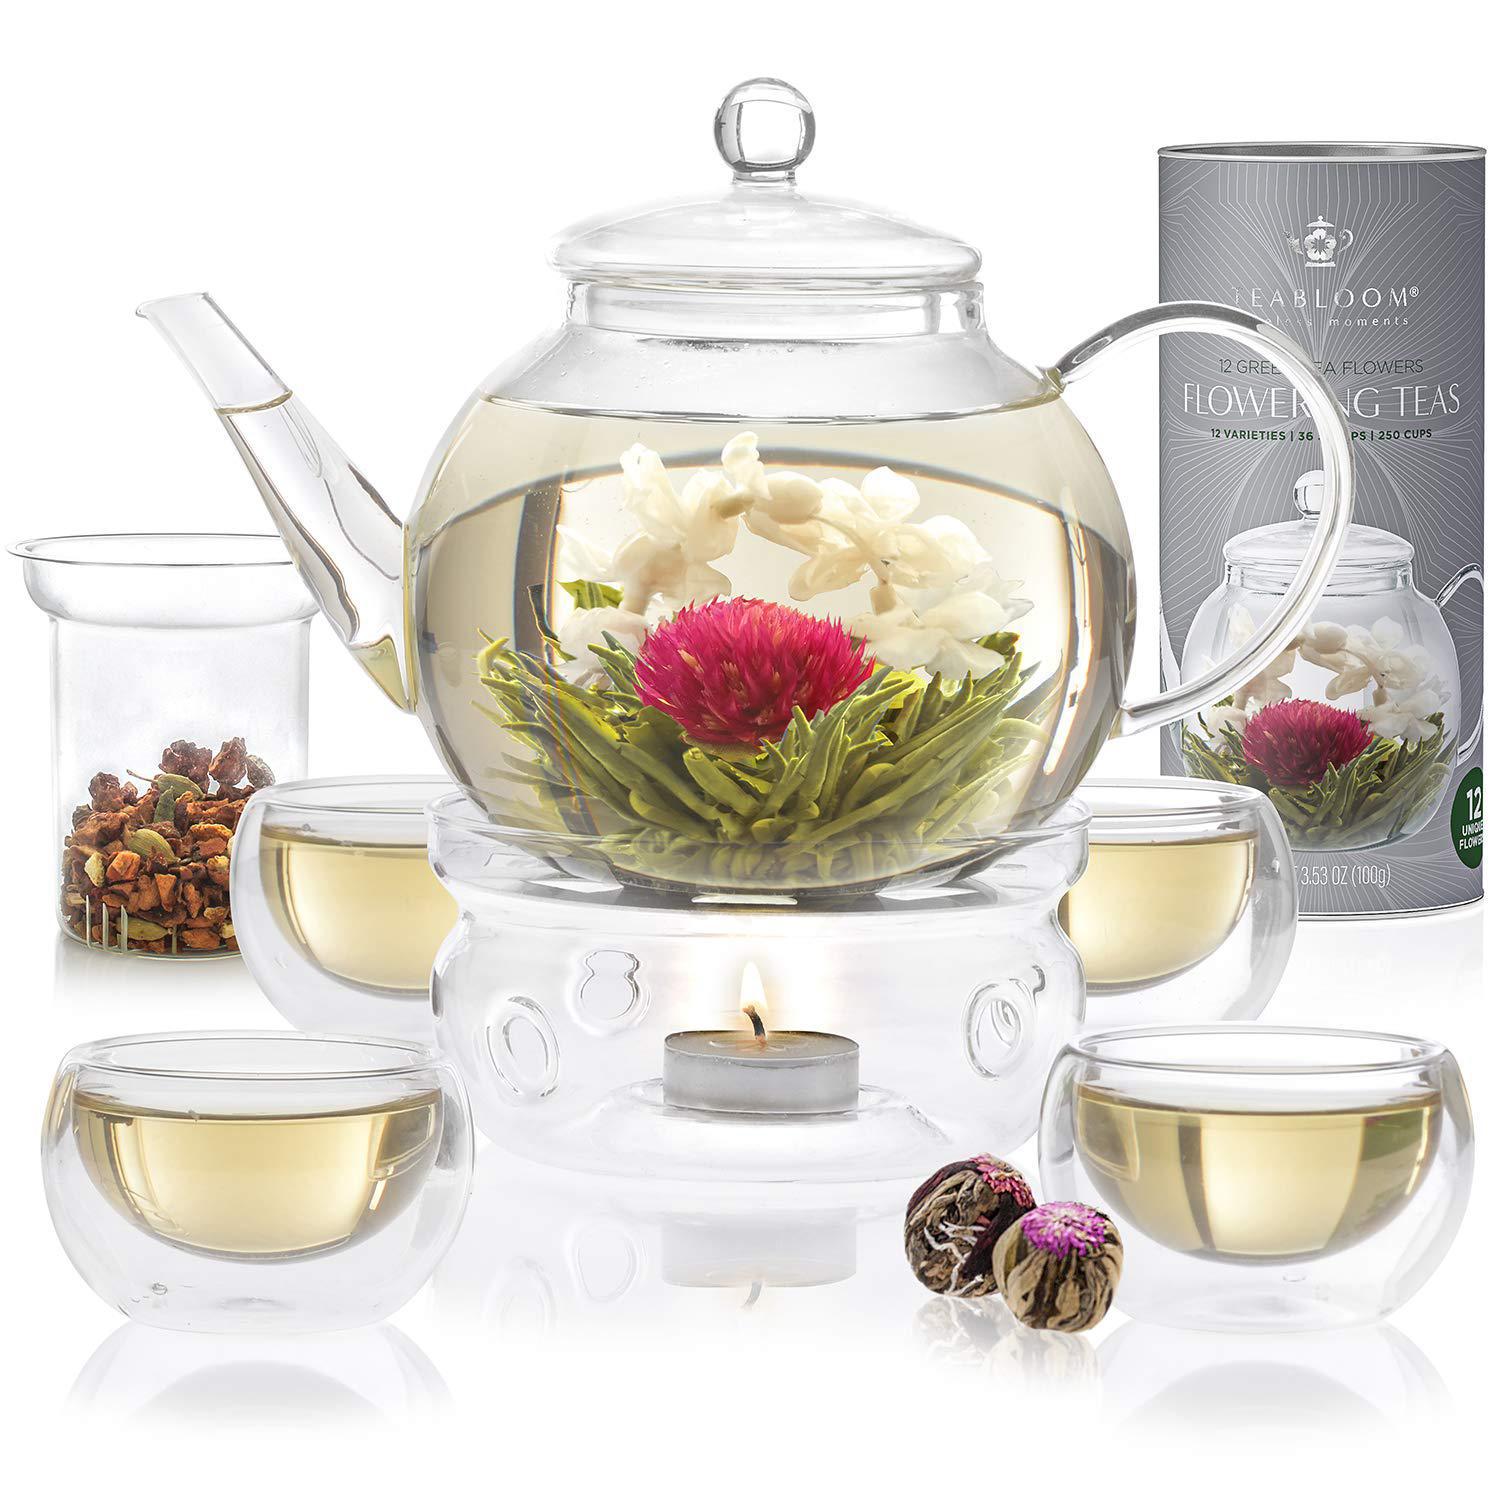 Blooming Tea | Flowering Jasmine